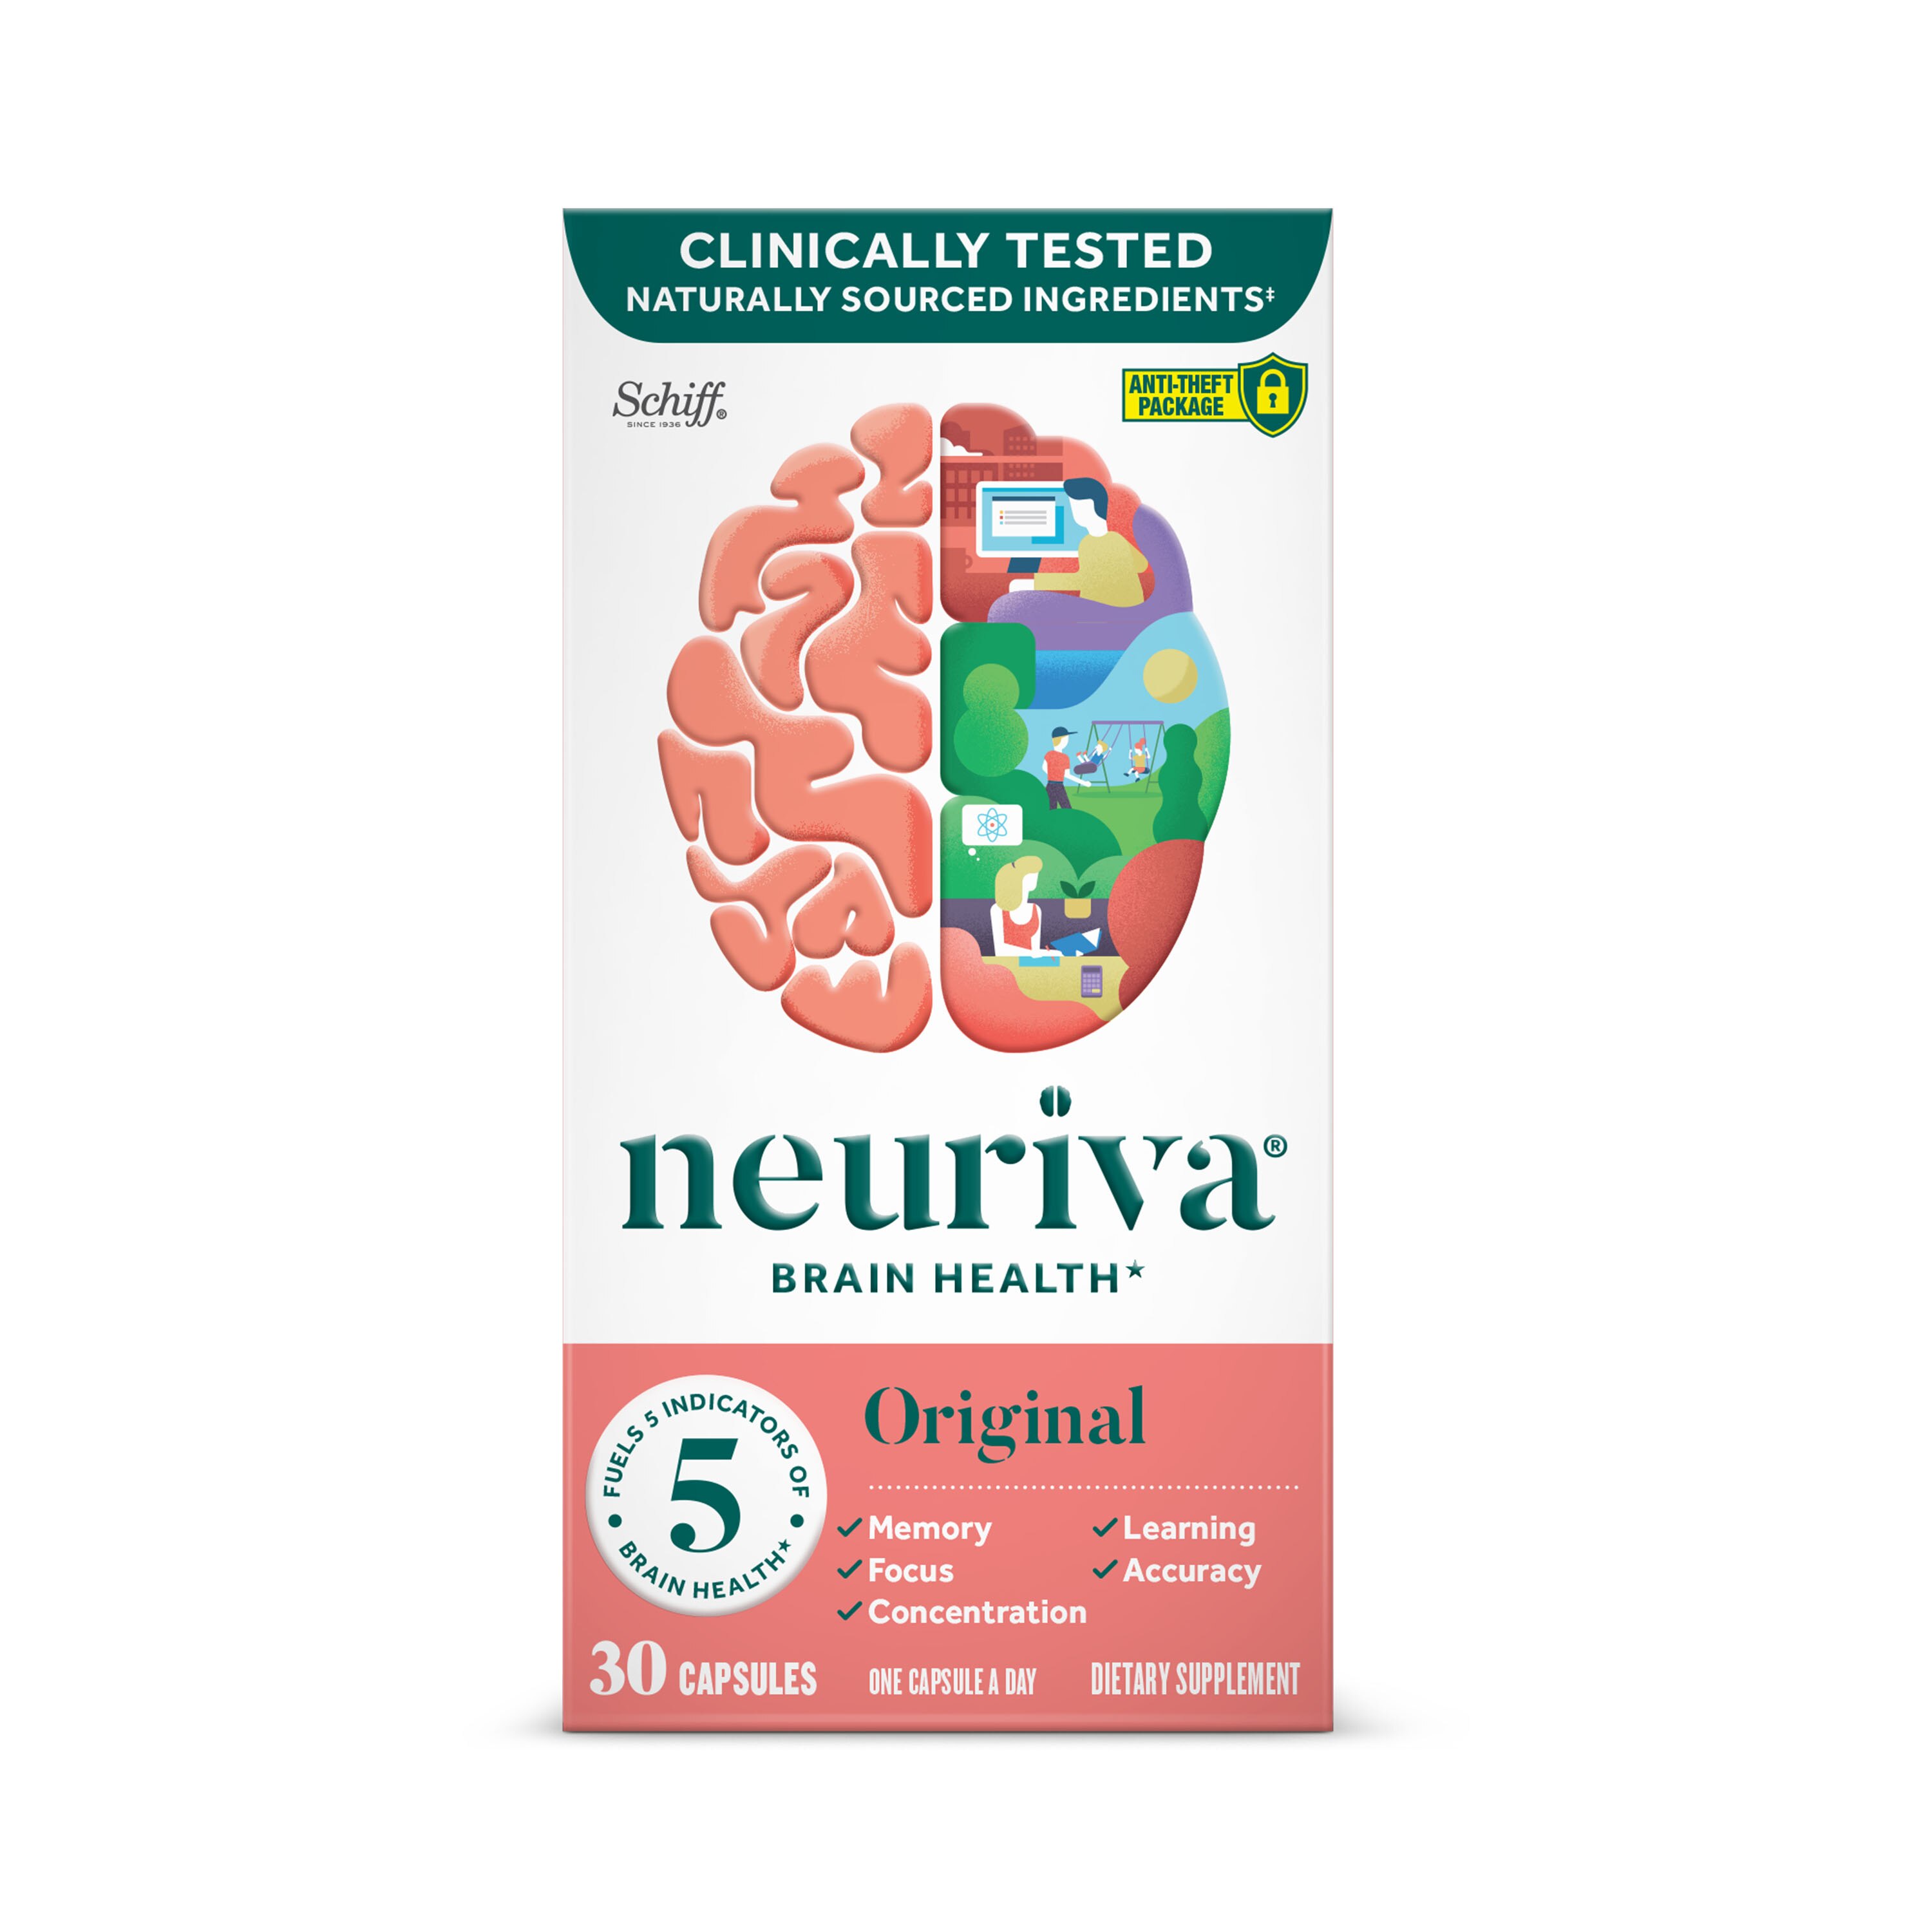 Neuriva Original - Suplemento dietario para el buen funcionamiento del cerebro, ayuda a la atención, memoria, aprendizaje, precisión y concentración, 30 u.